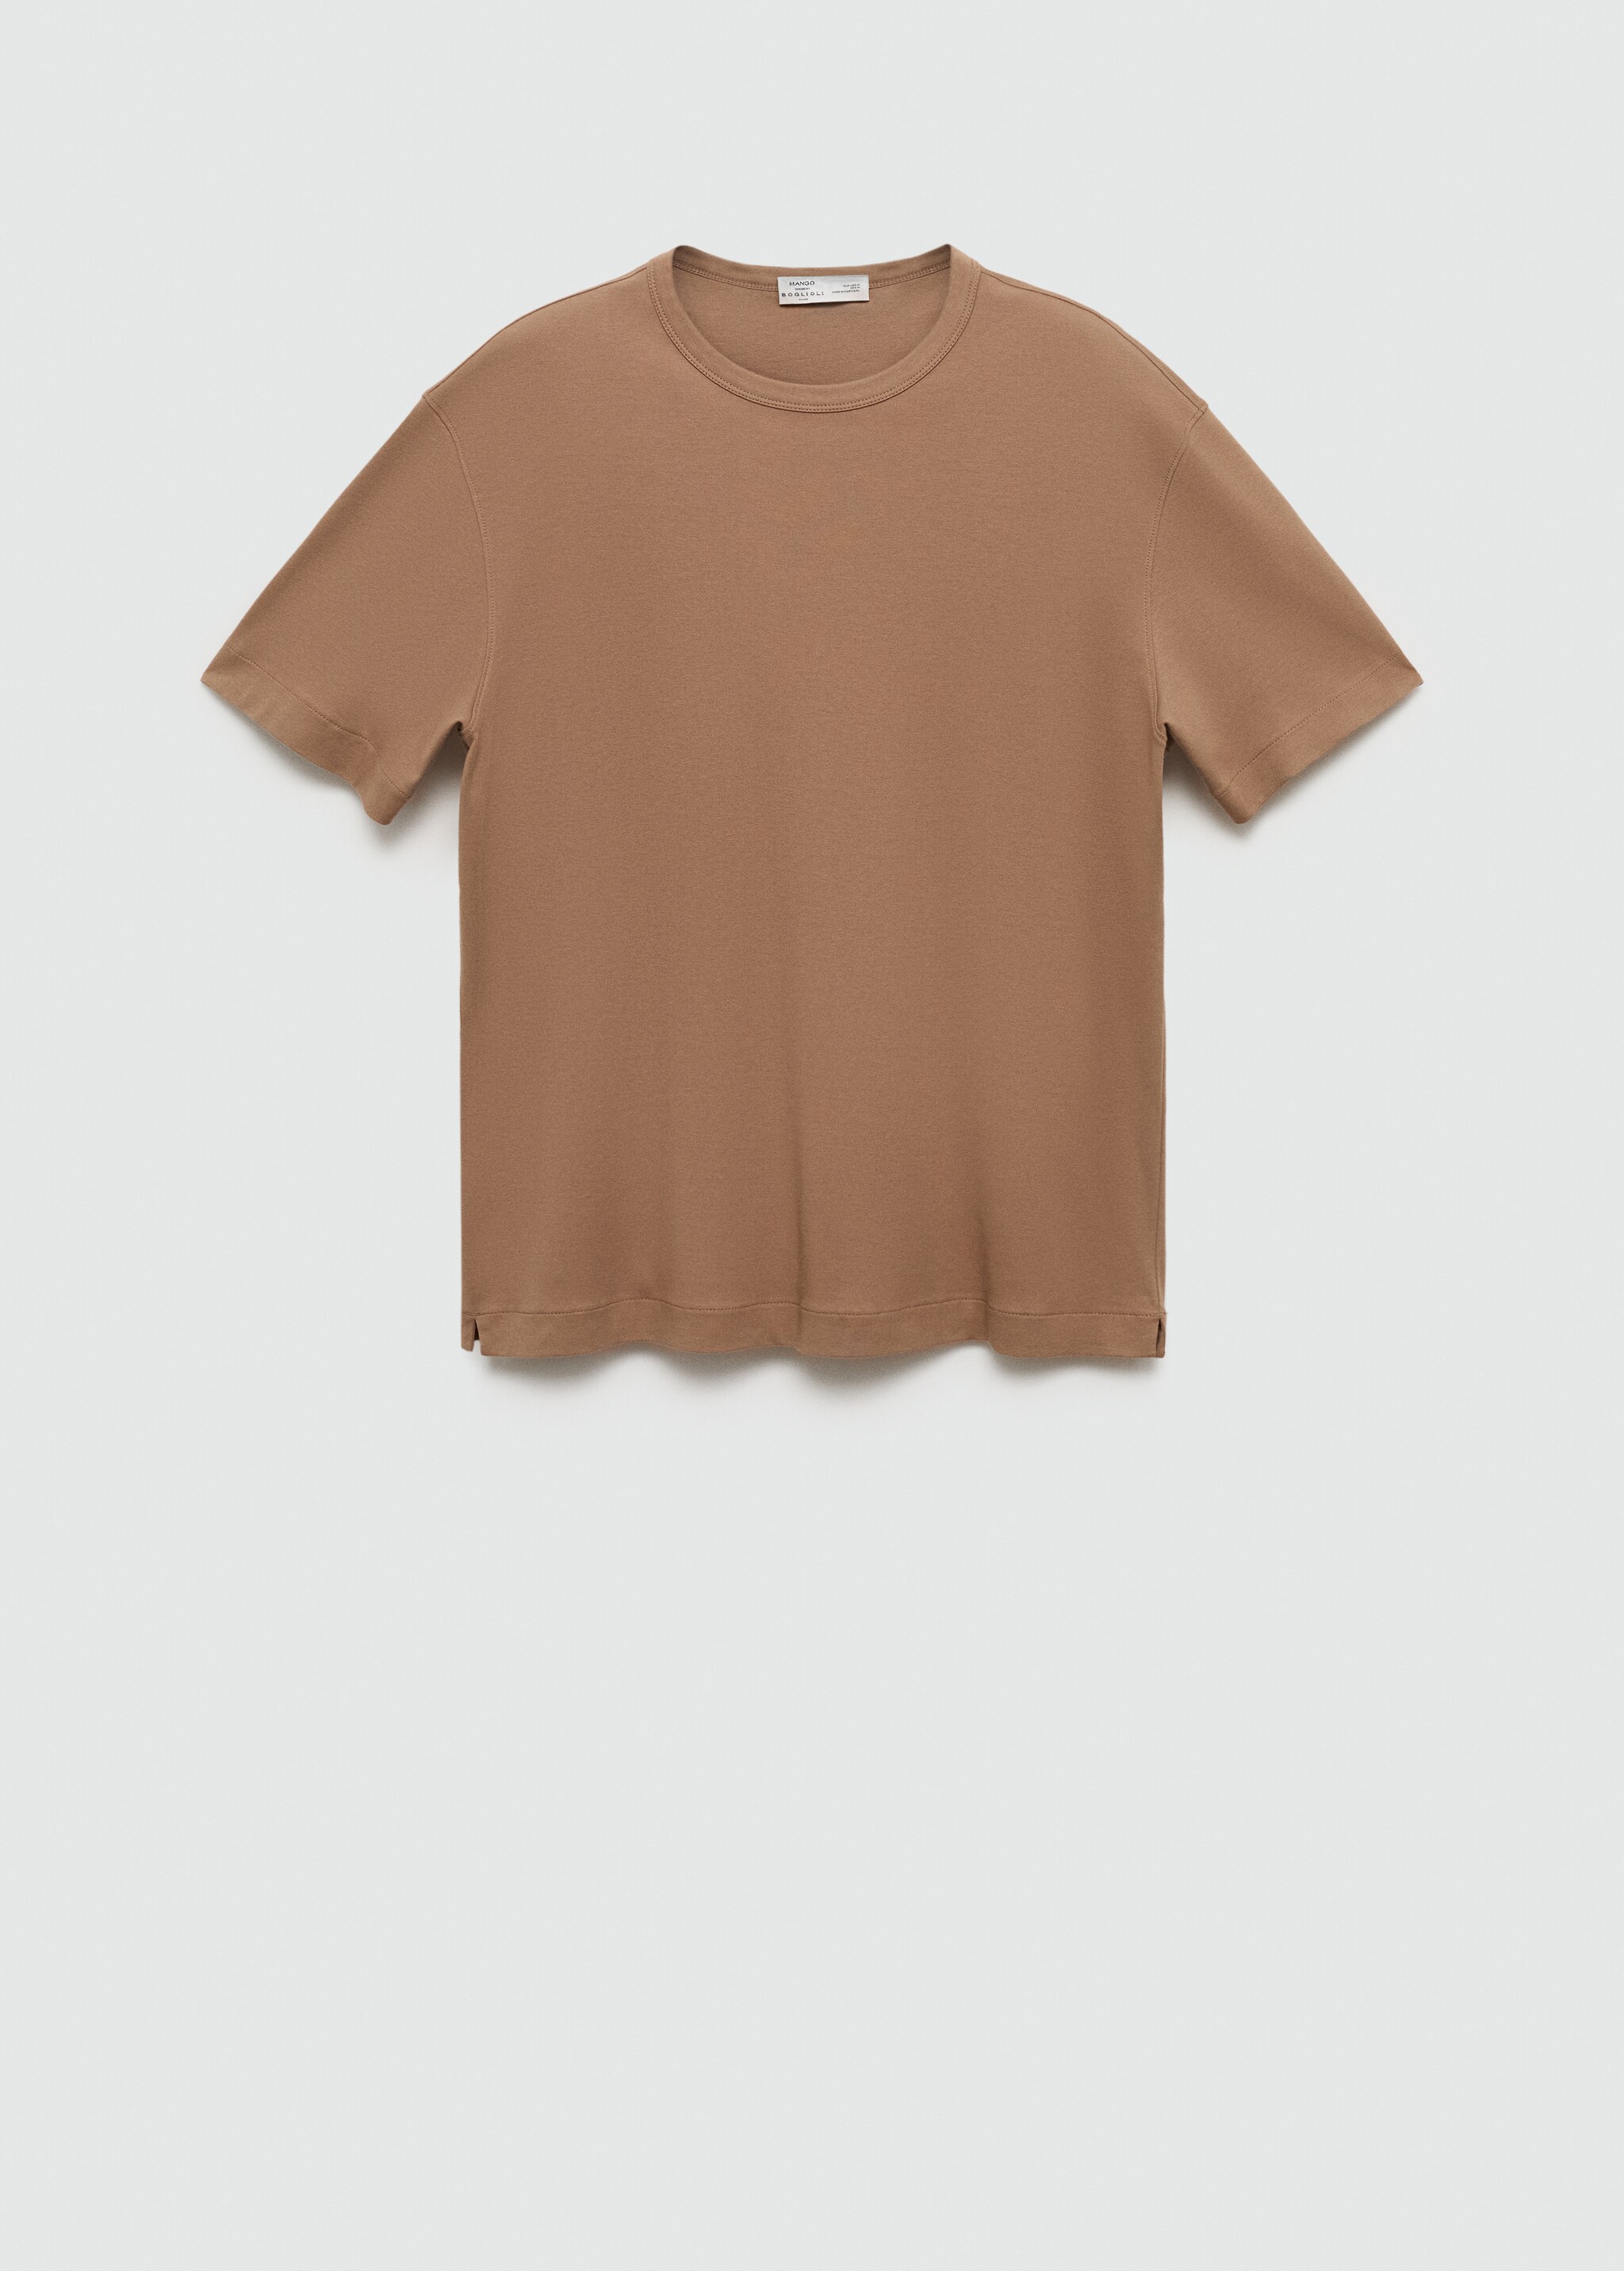 T-shirt slim fit de 100% algodão - Artigo sem modelo